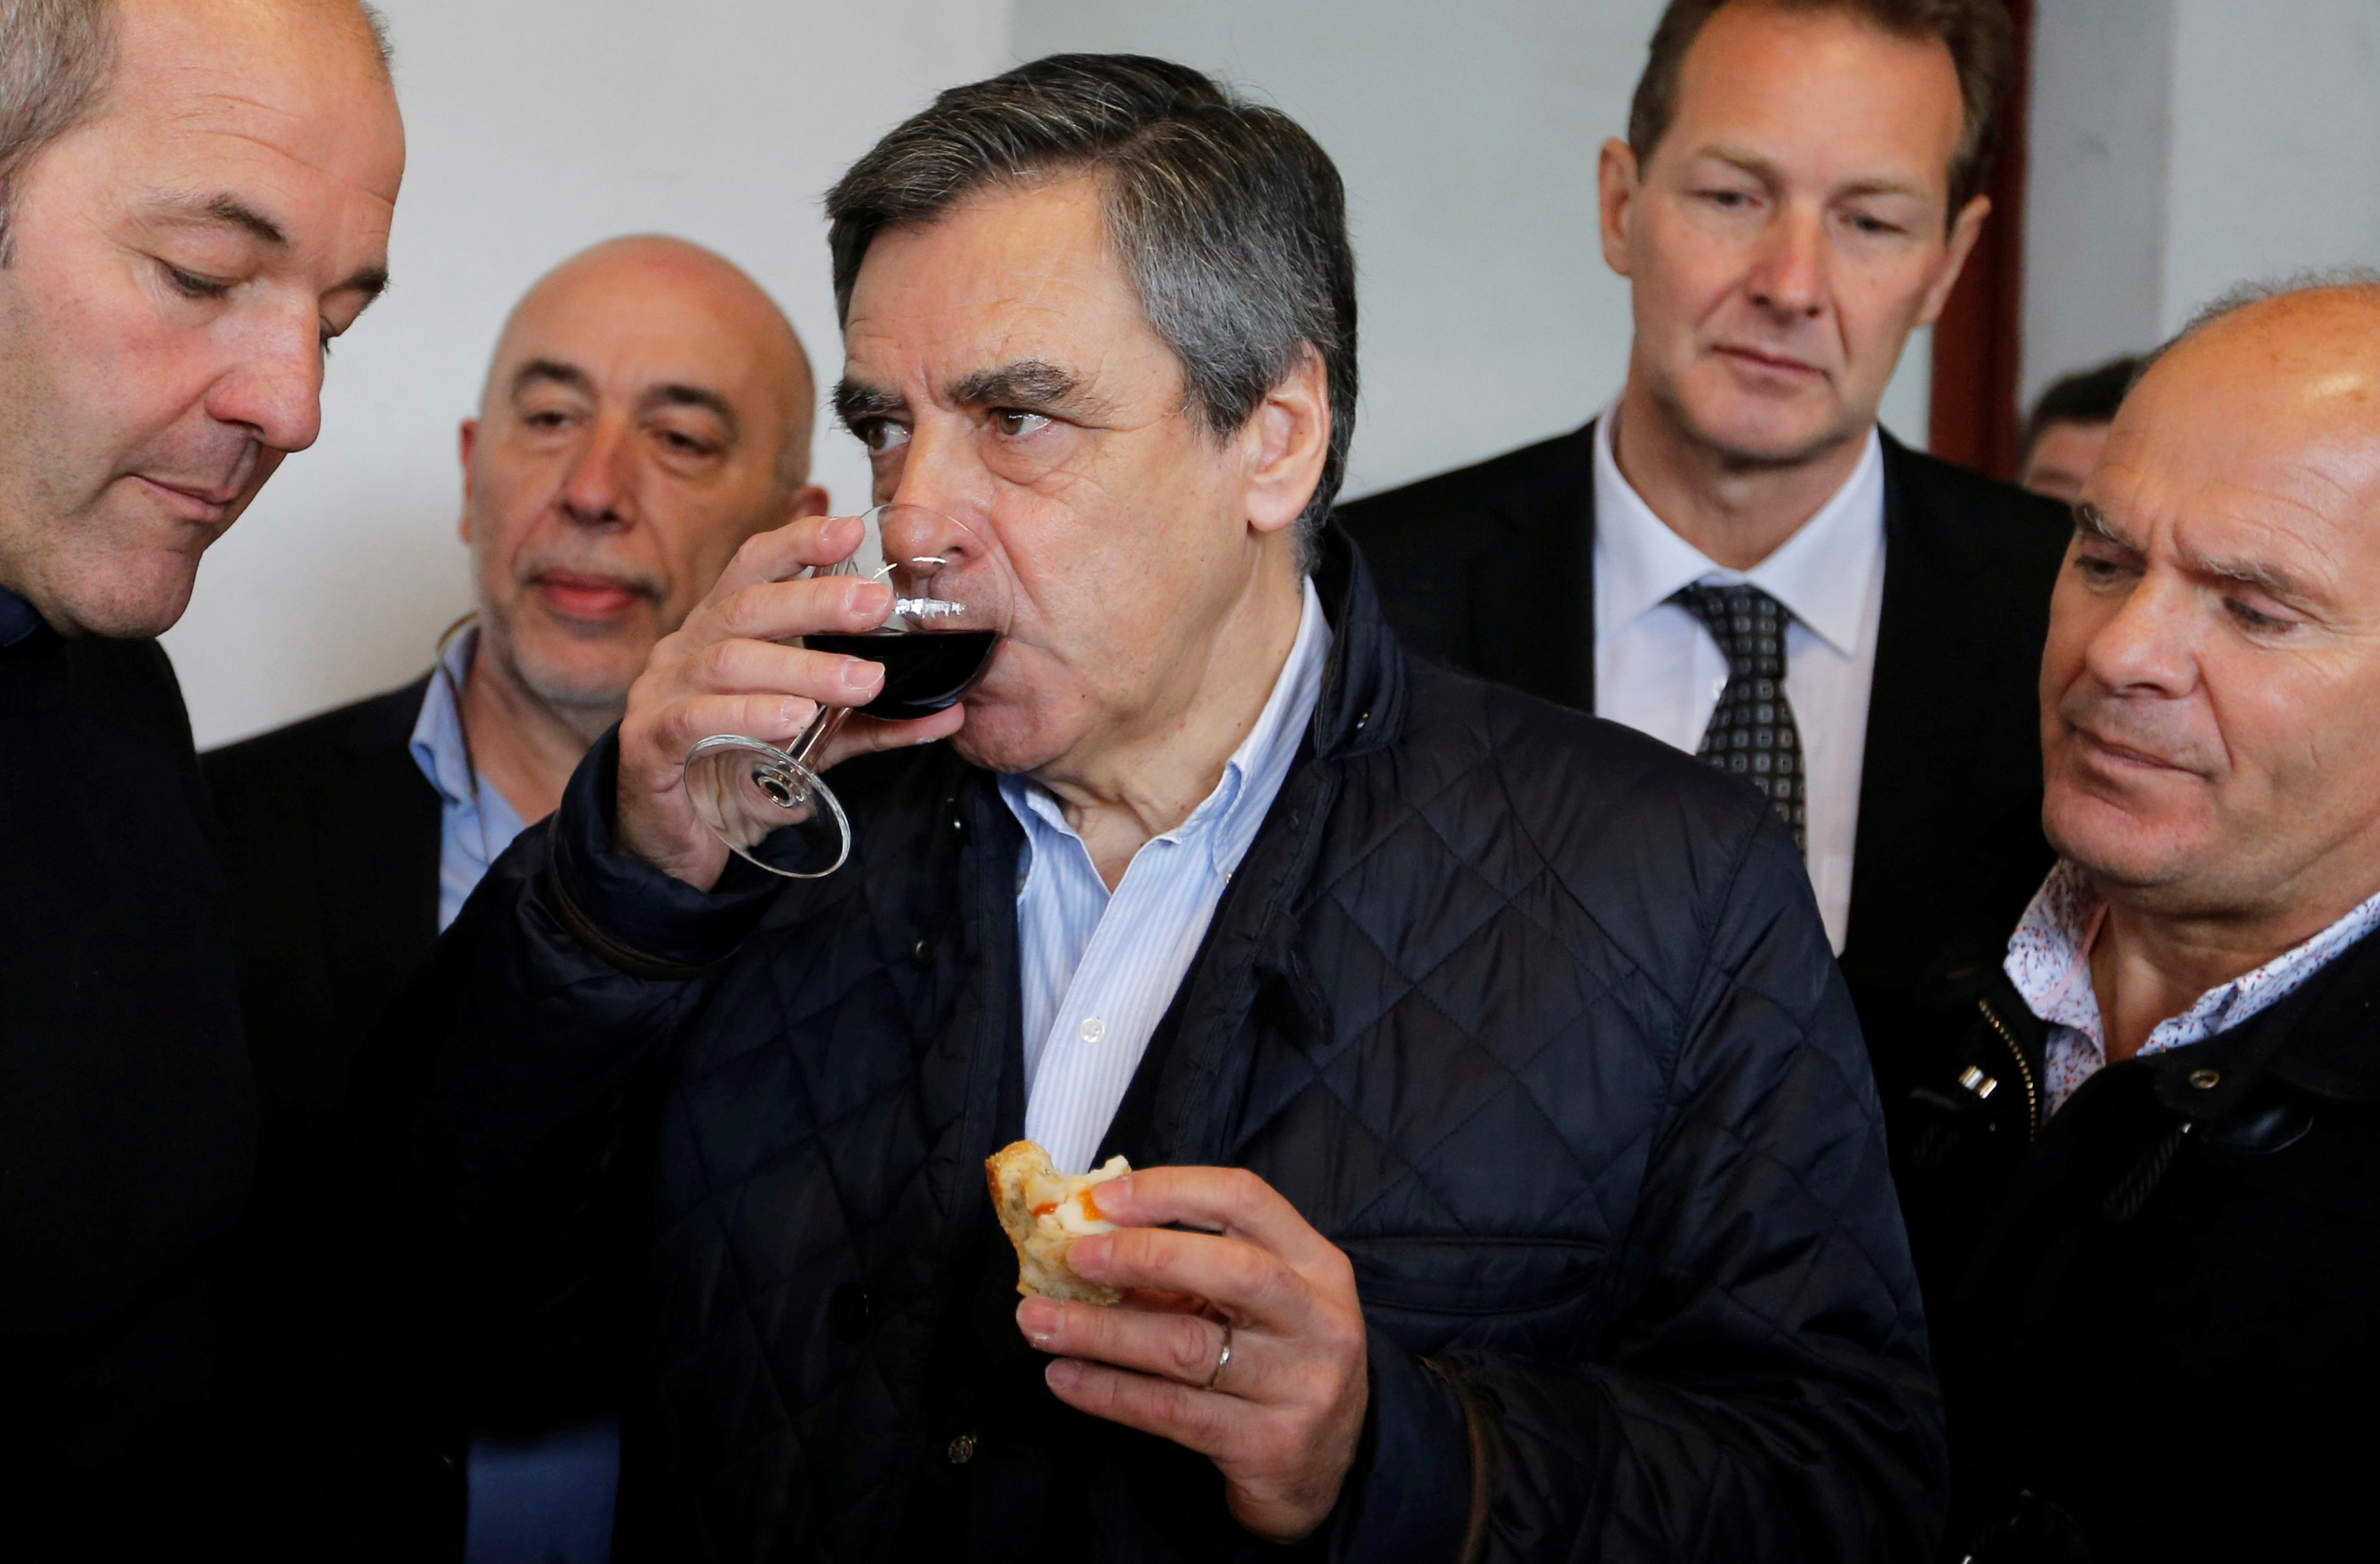 فرانسوا فيون يتناول كوب من النبيذ